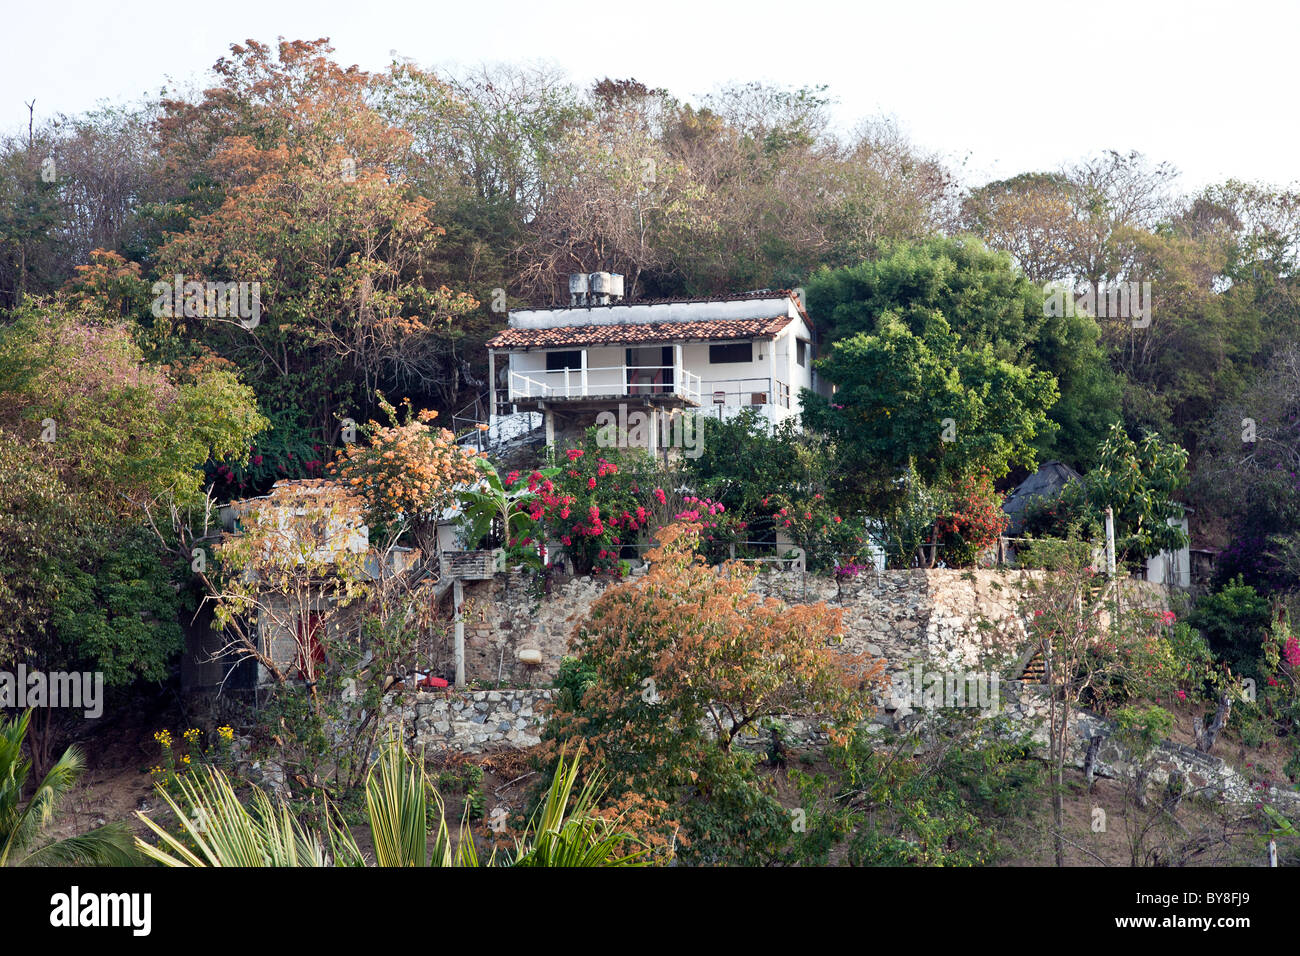 Jolie maison à flanc de murs de plâtre blanc toit tuile rouge des murs de soutènement en pierre une végétation tropicale Puerto Angel Banque D'Images